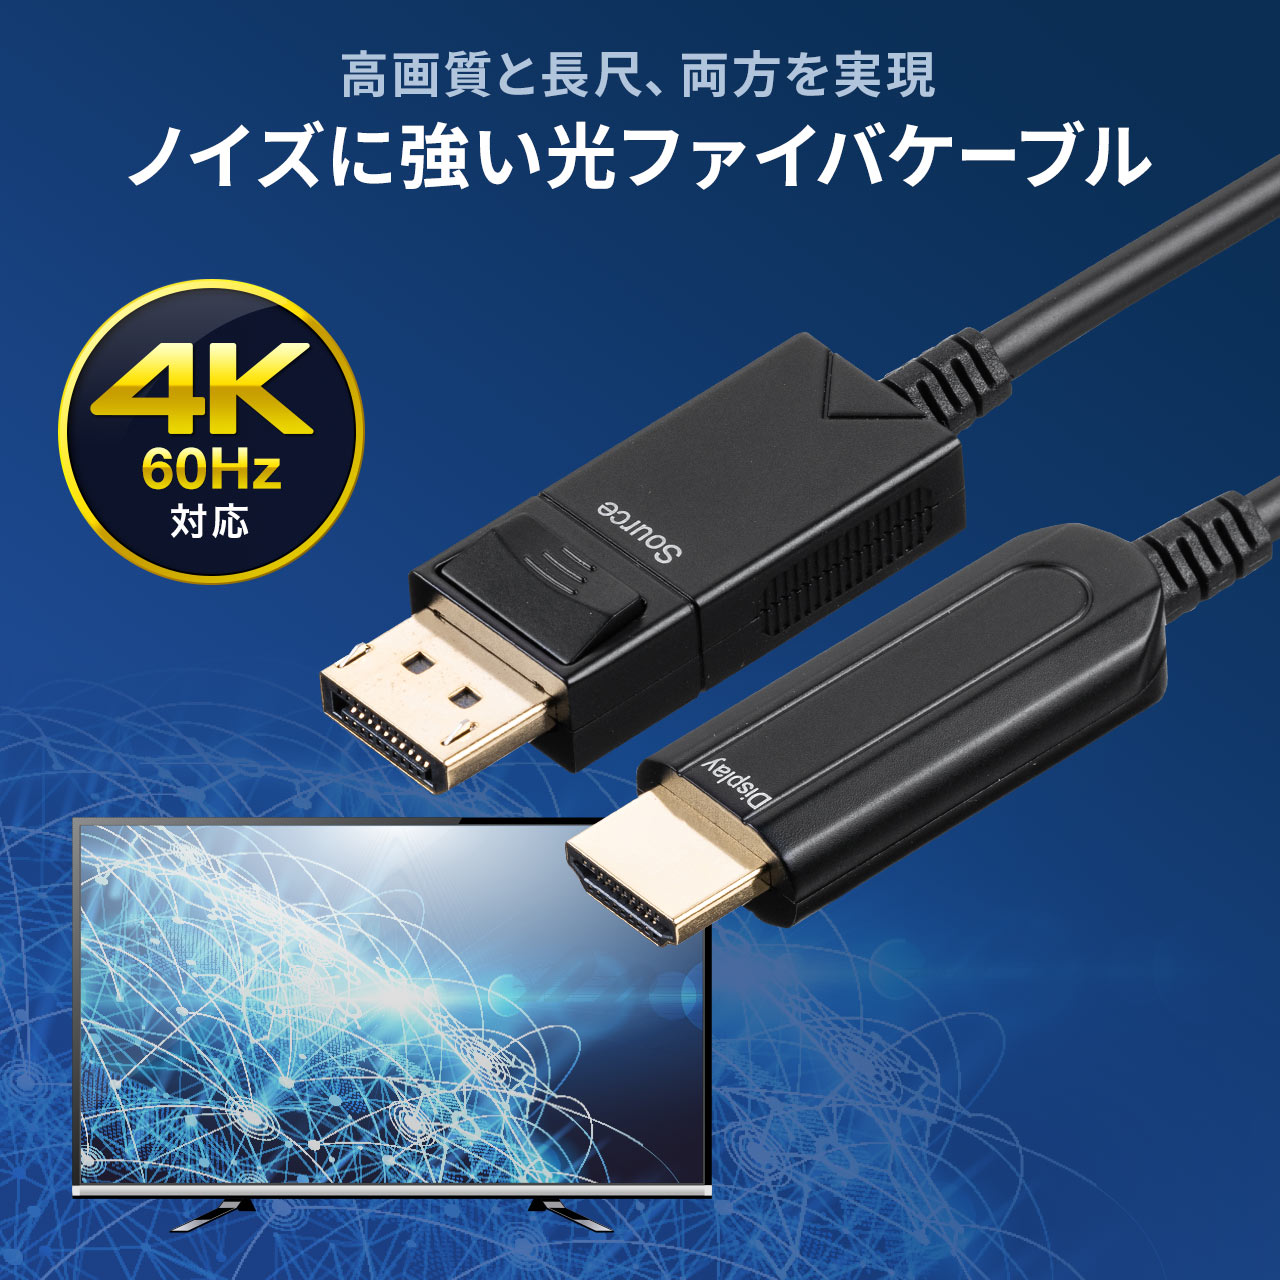 サンワサプライ HDMIアクティブケーブル(4K 60Hz対応) 25m KM-HD20